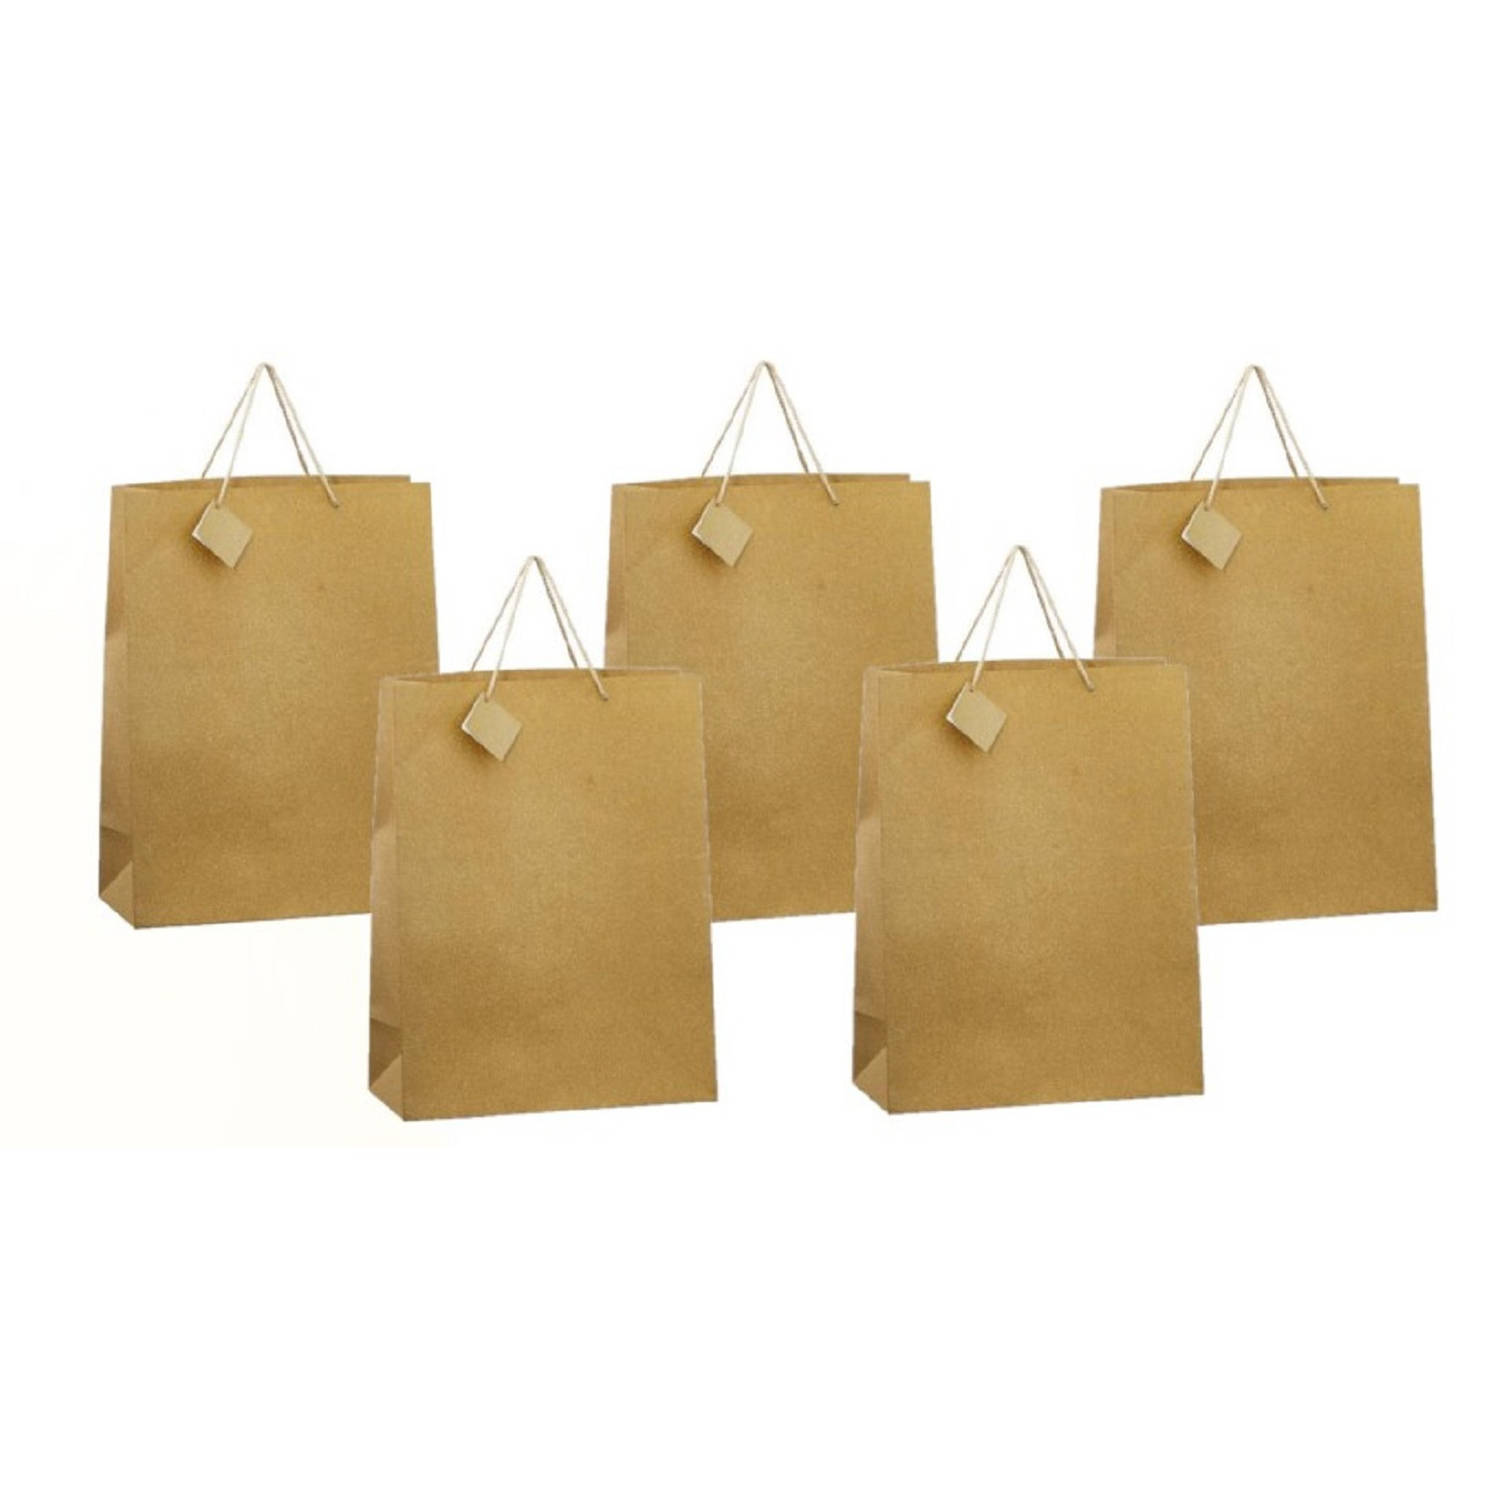 Winkelcentrum Phalanx voorraad 5x stuks luxe gouden papieren giftbags/tasjes met glitters 30 x 29 cm -  cadeautasjes | Blokker